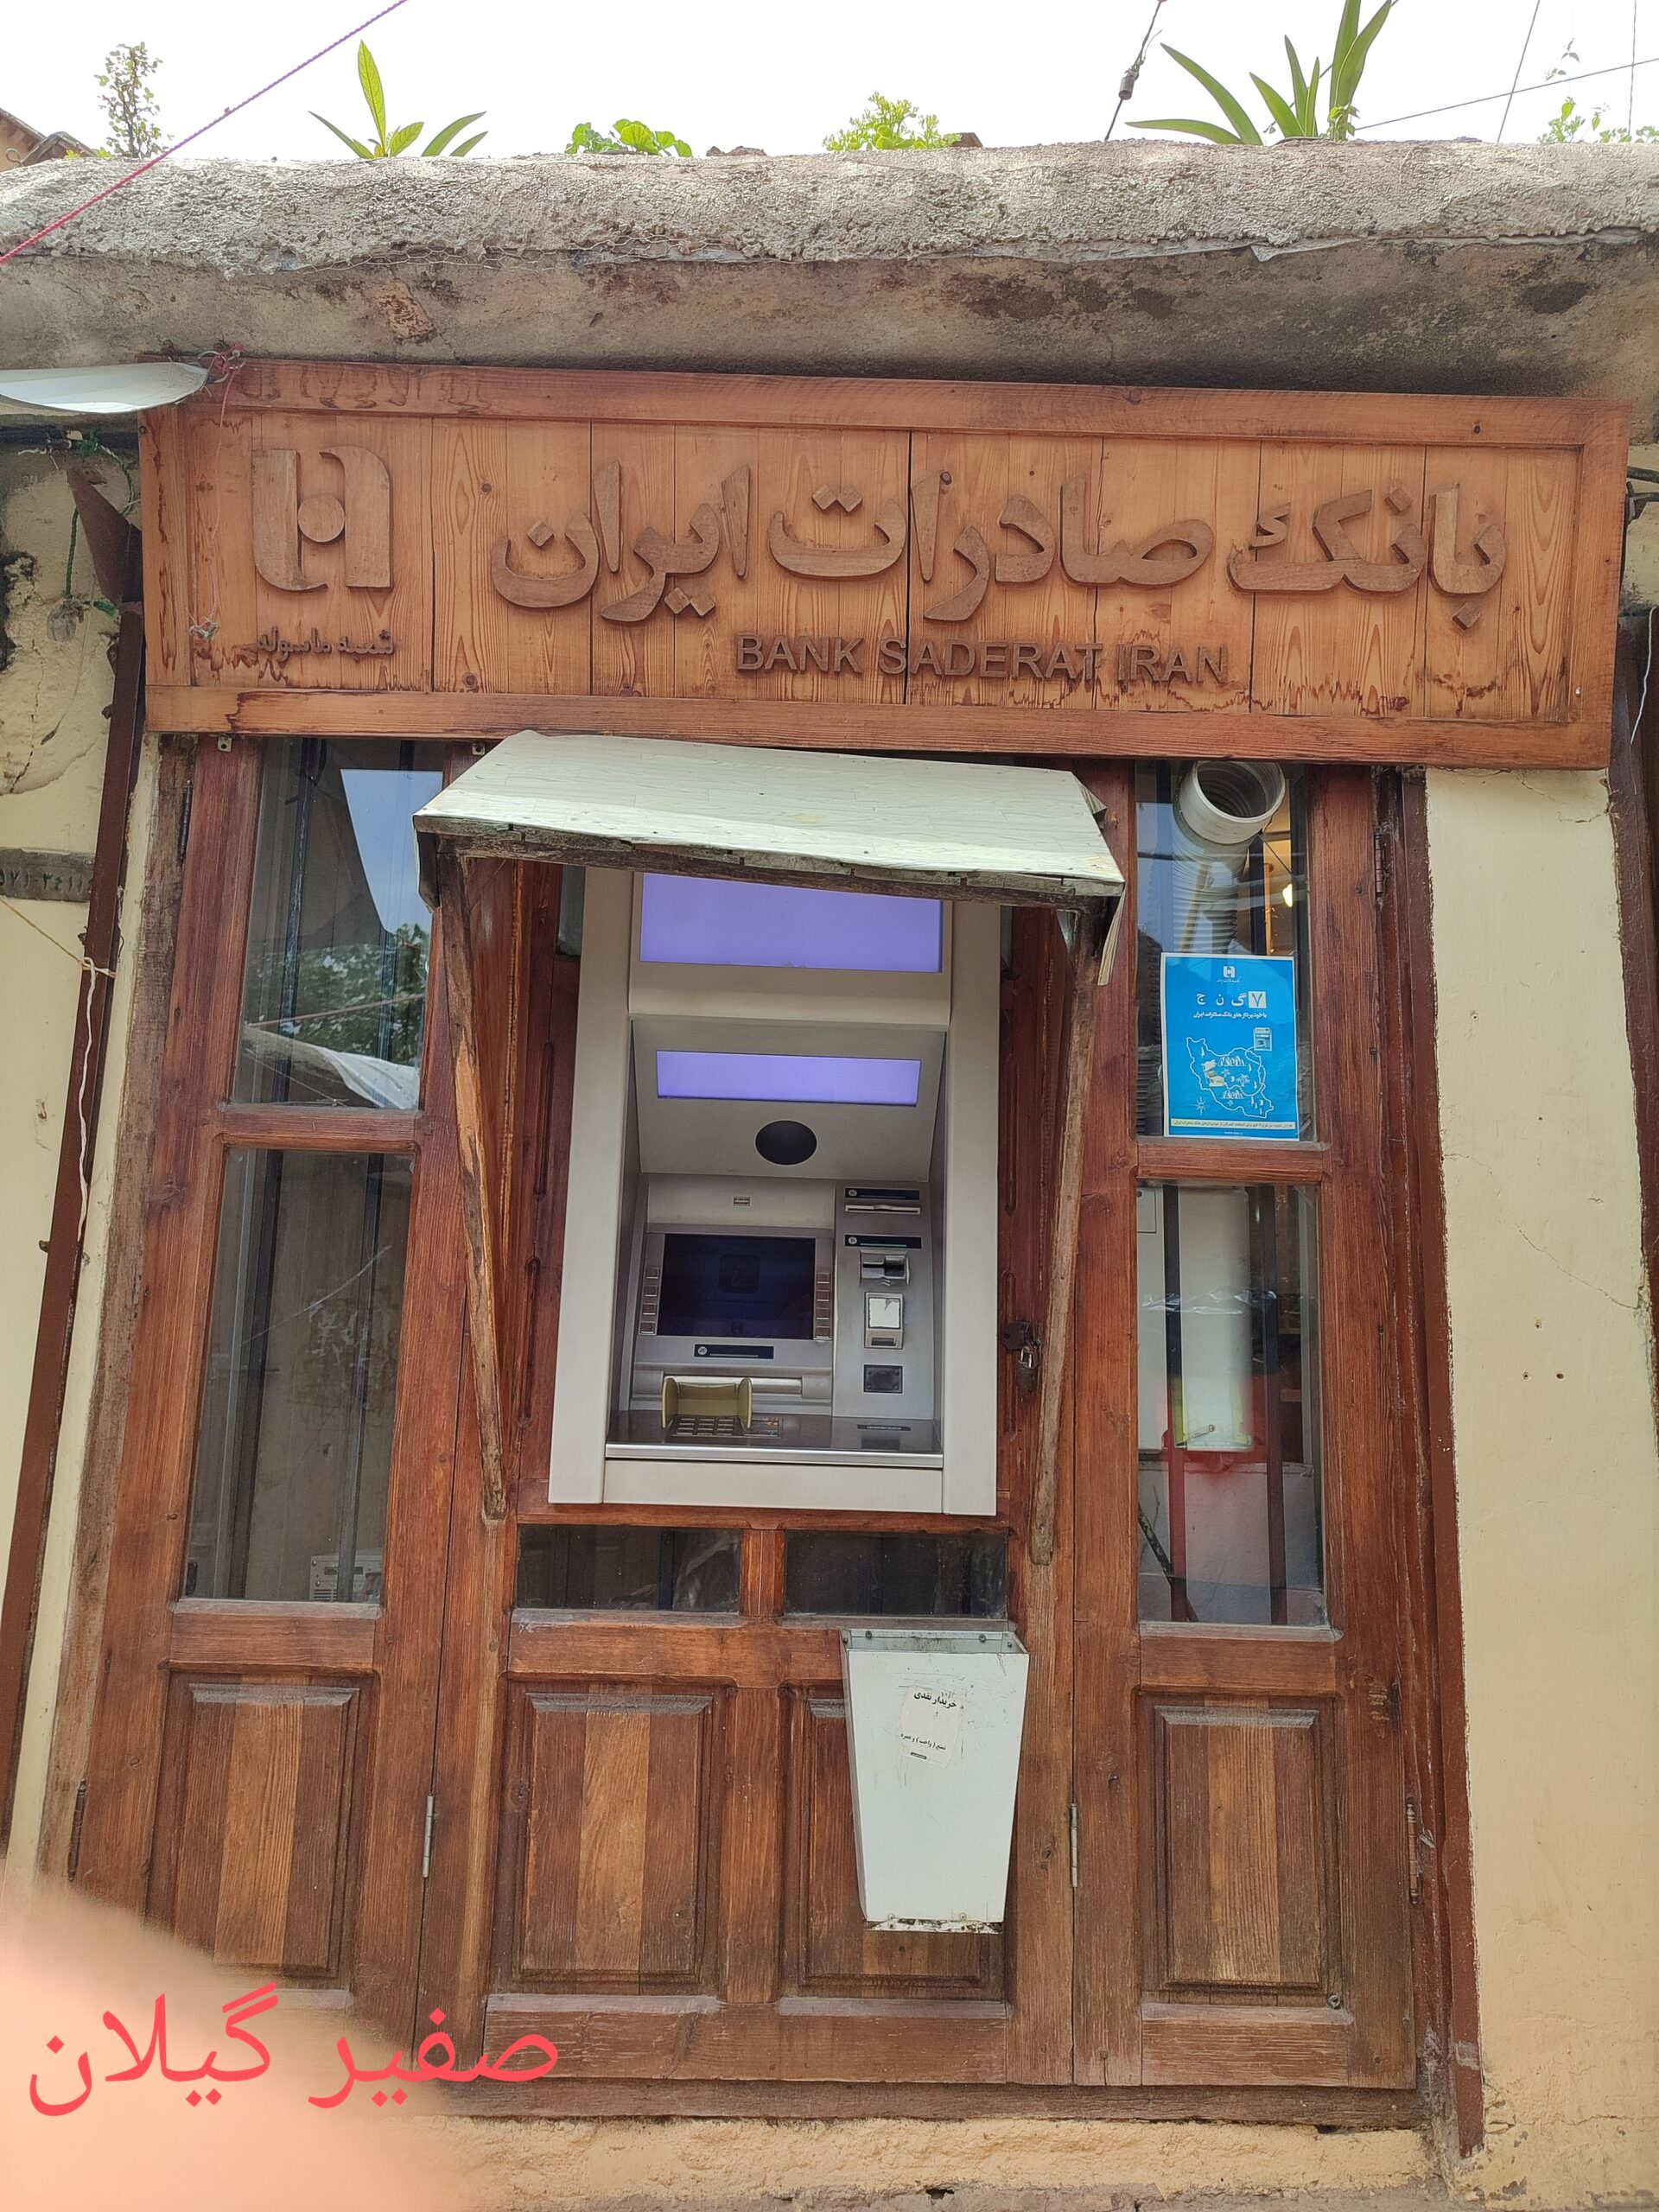 کوچکترین بانک صادرات ایران در زیباترین و معروفترین روستای پلکانی ایران